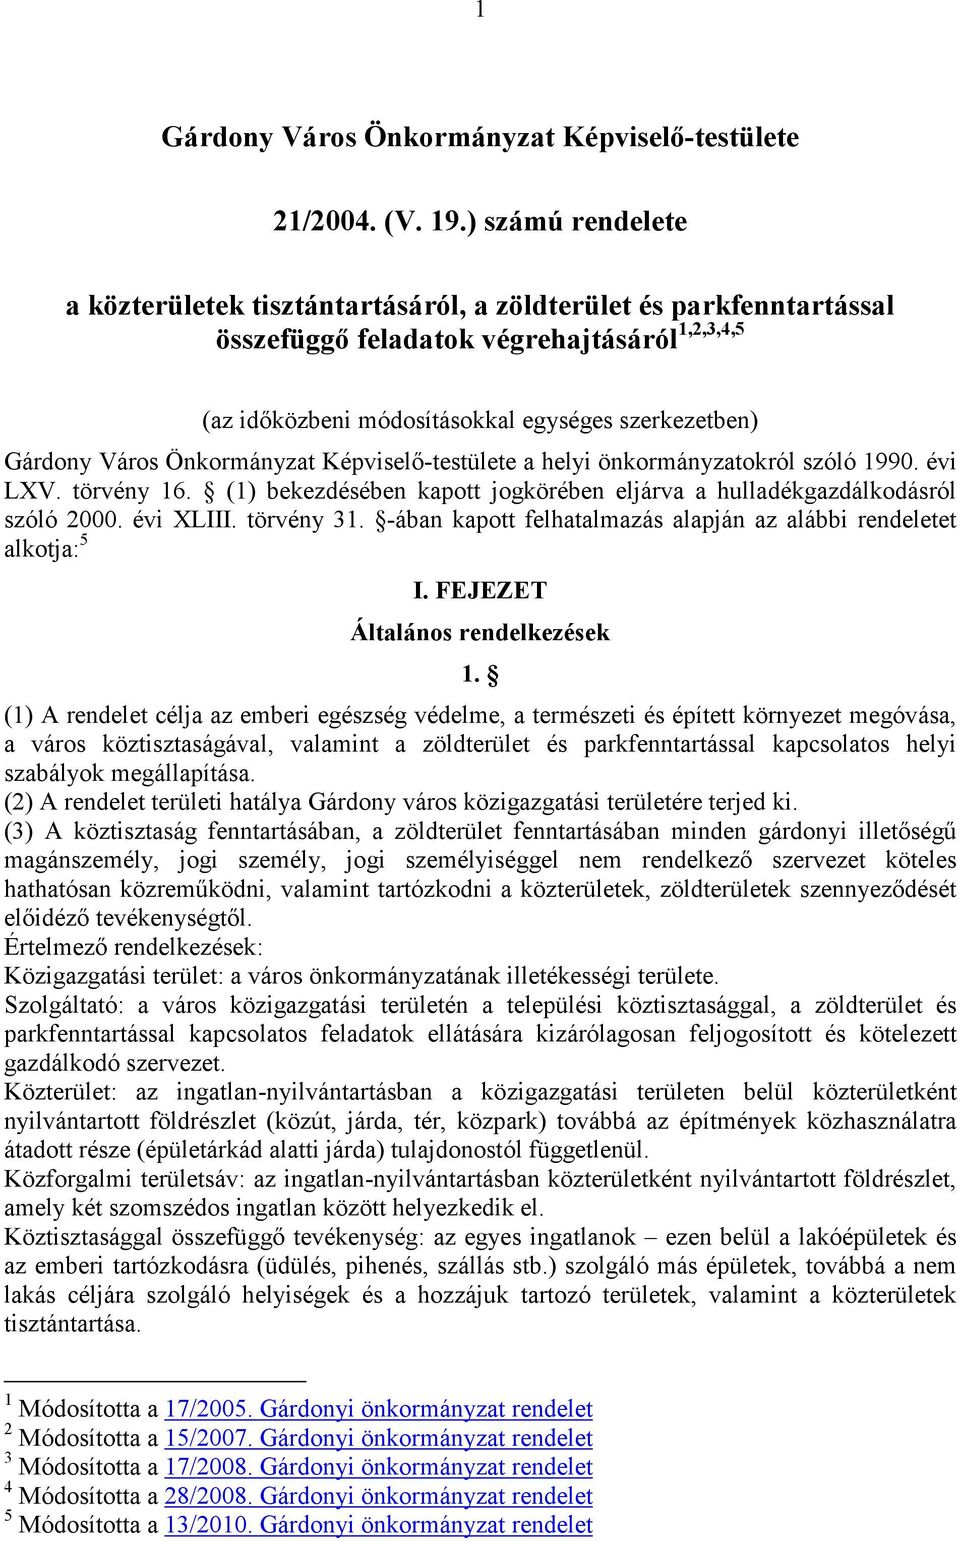 Város Önkormányzat Képviselı-testülete a helyi önkormányzatokról szóló 1990. évi LXV. törvény 16. (1) bekezdésében kapott jogkörében eljárva a hulladékgazdálkodásról szóló 2000. évi XLIII. törvény 31.